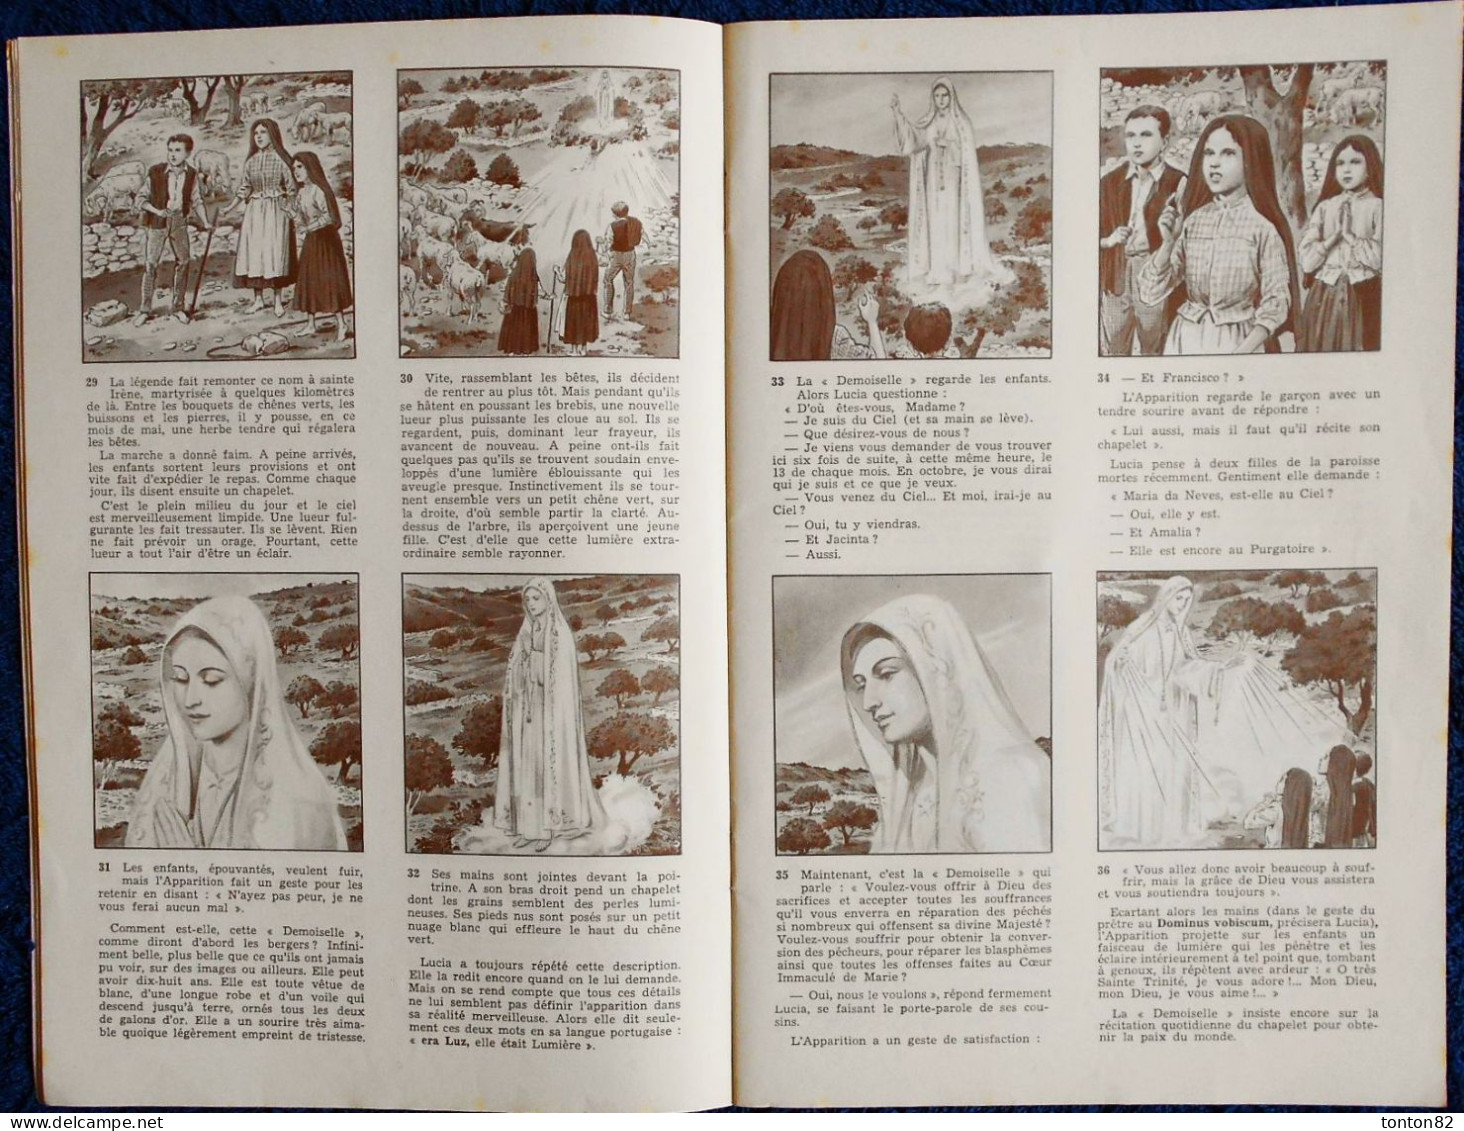 Agnès Richome - Notre-Dame De FATIMA -  Éditions Fleurus - ( E.O 1977 ) . - Religion